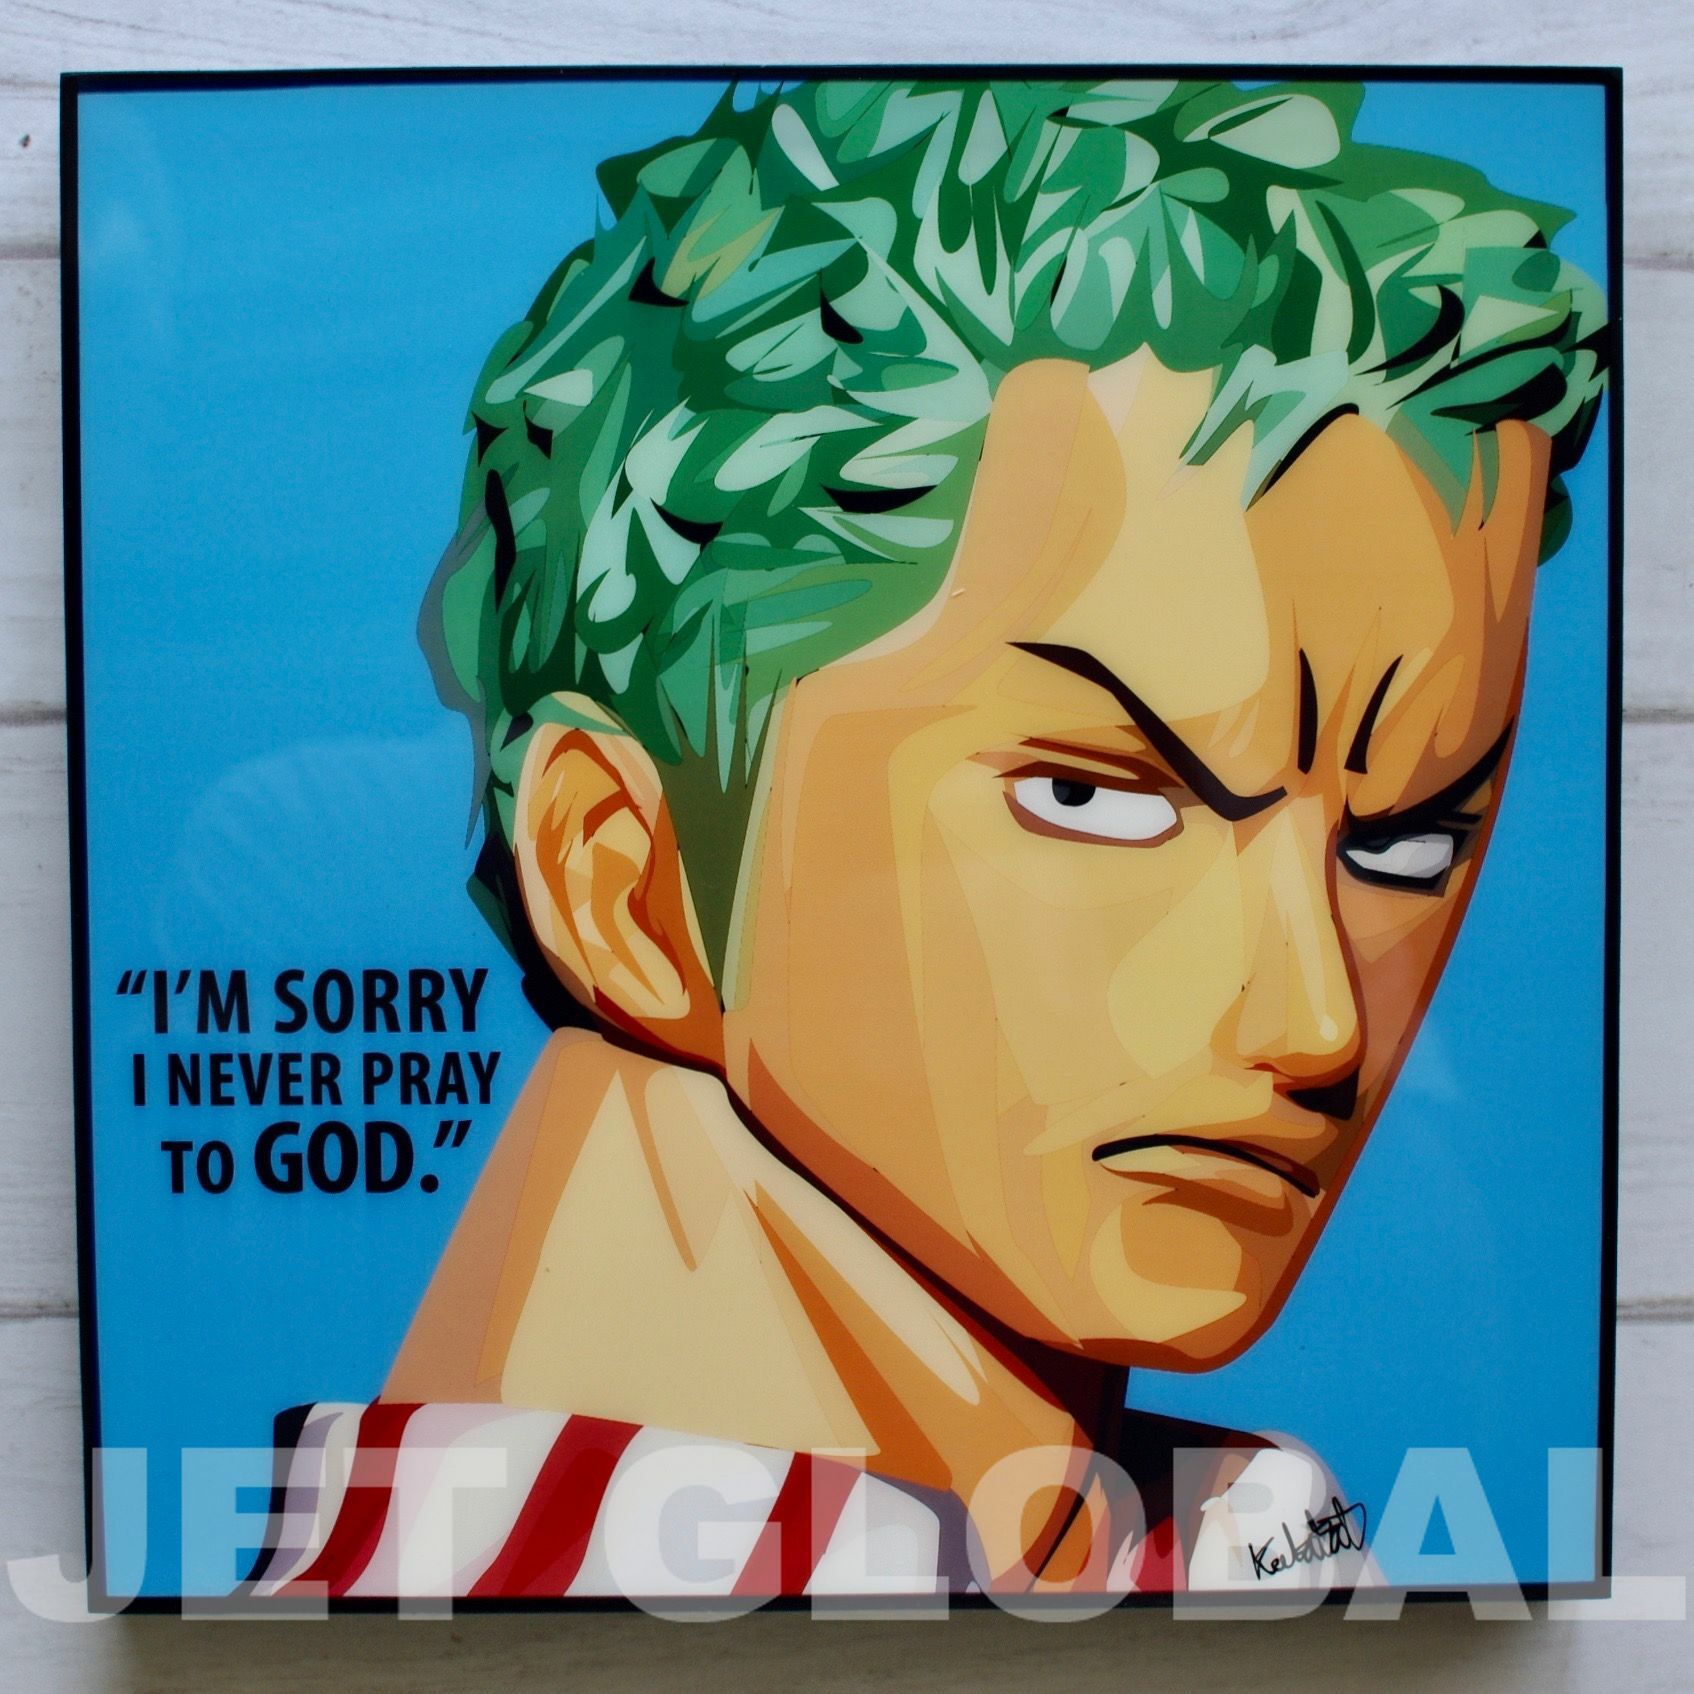 ワンピース ゾロ One Piece Zoro Ver 1 サイズ 26cm Papa Op0004 ポップアートパネル フレーム公式通販サイト 商品数1000点超え